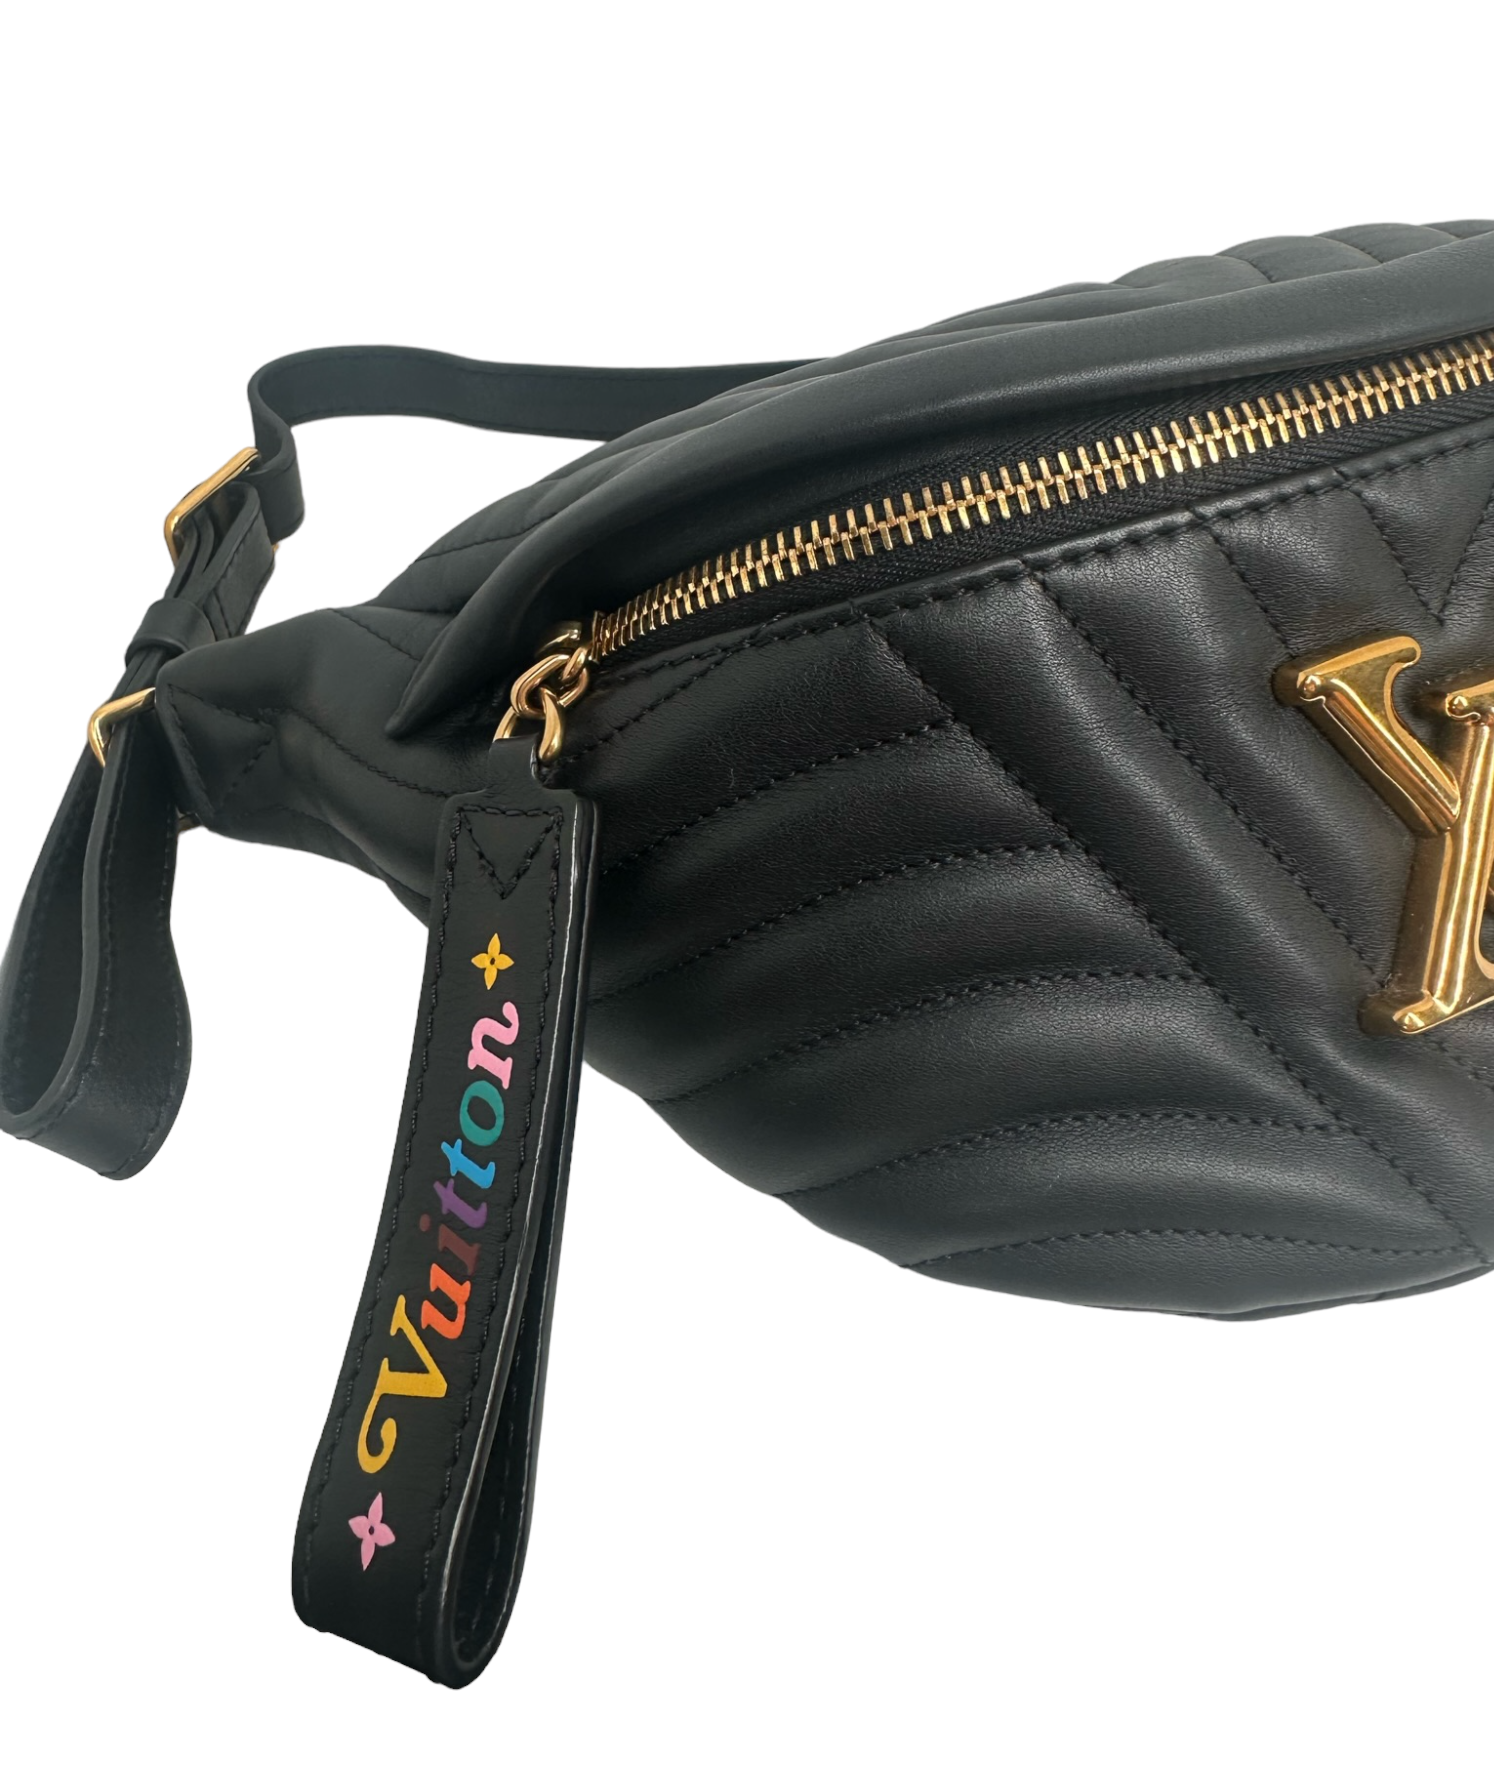 Louis Vuitton Black Leather New Wave Belt Bag Louis Vuitton